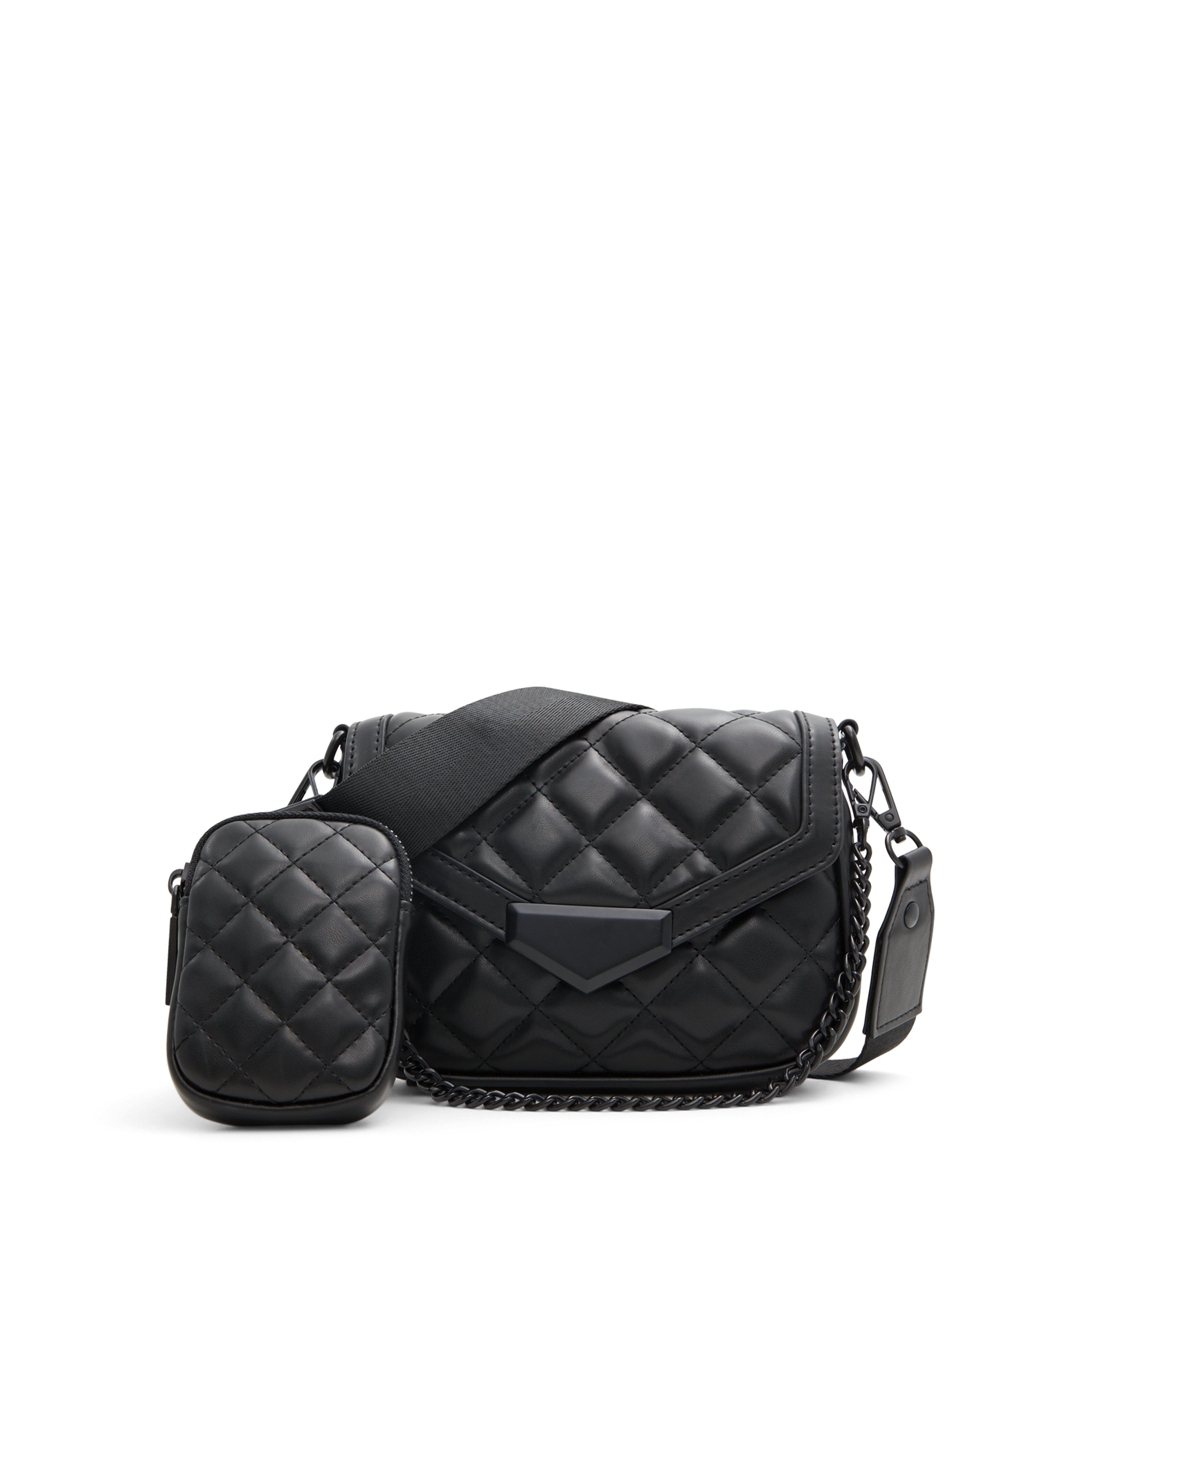 Shop Aldo Miraewinx Women's City Handbags In Black,black